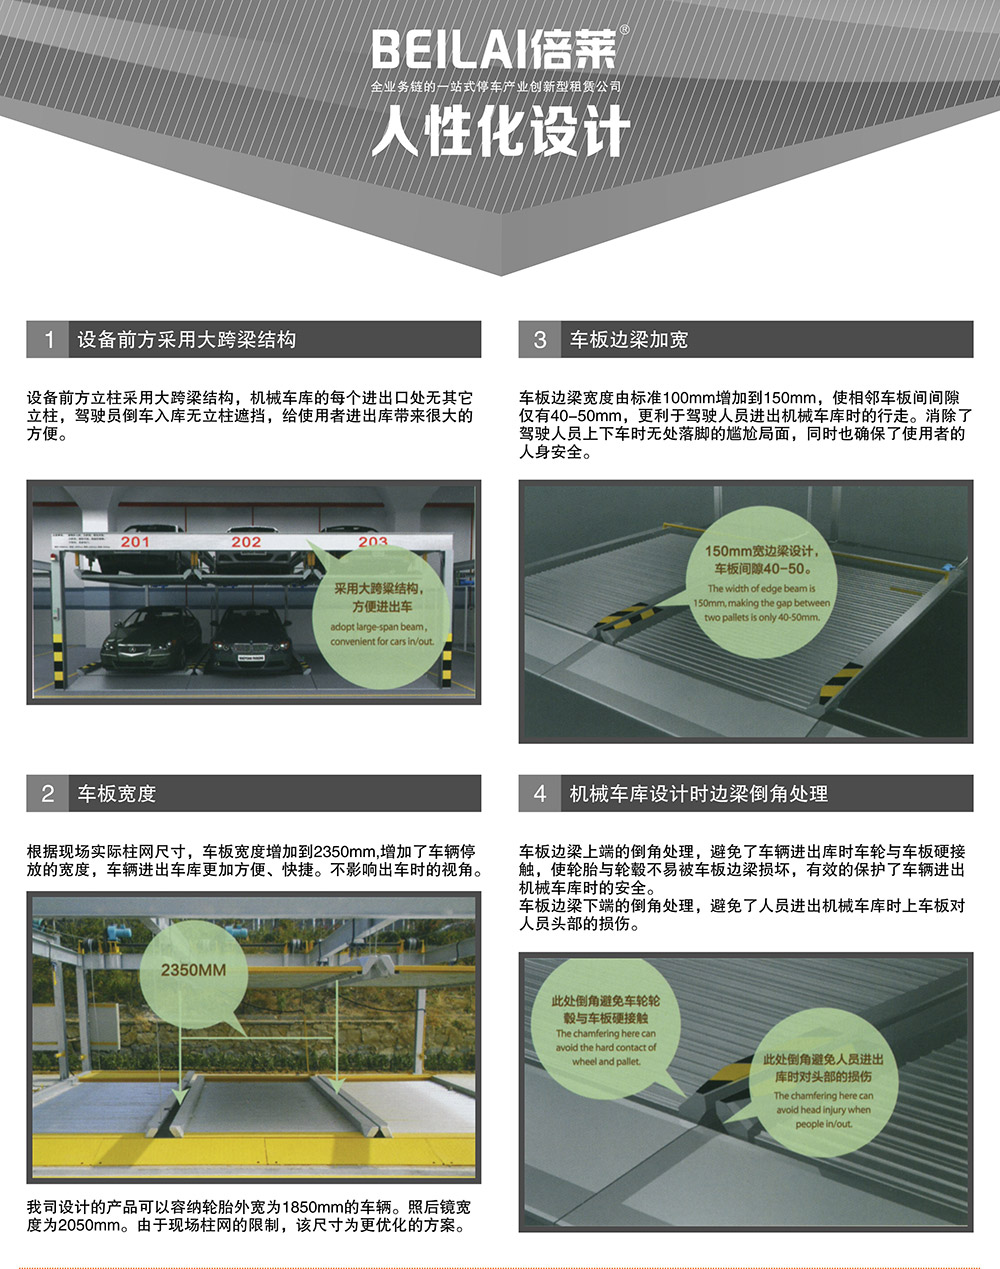 贵州贵阳重列PSH2二层升降横移立体停车设备人性化设计.jpg